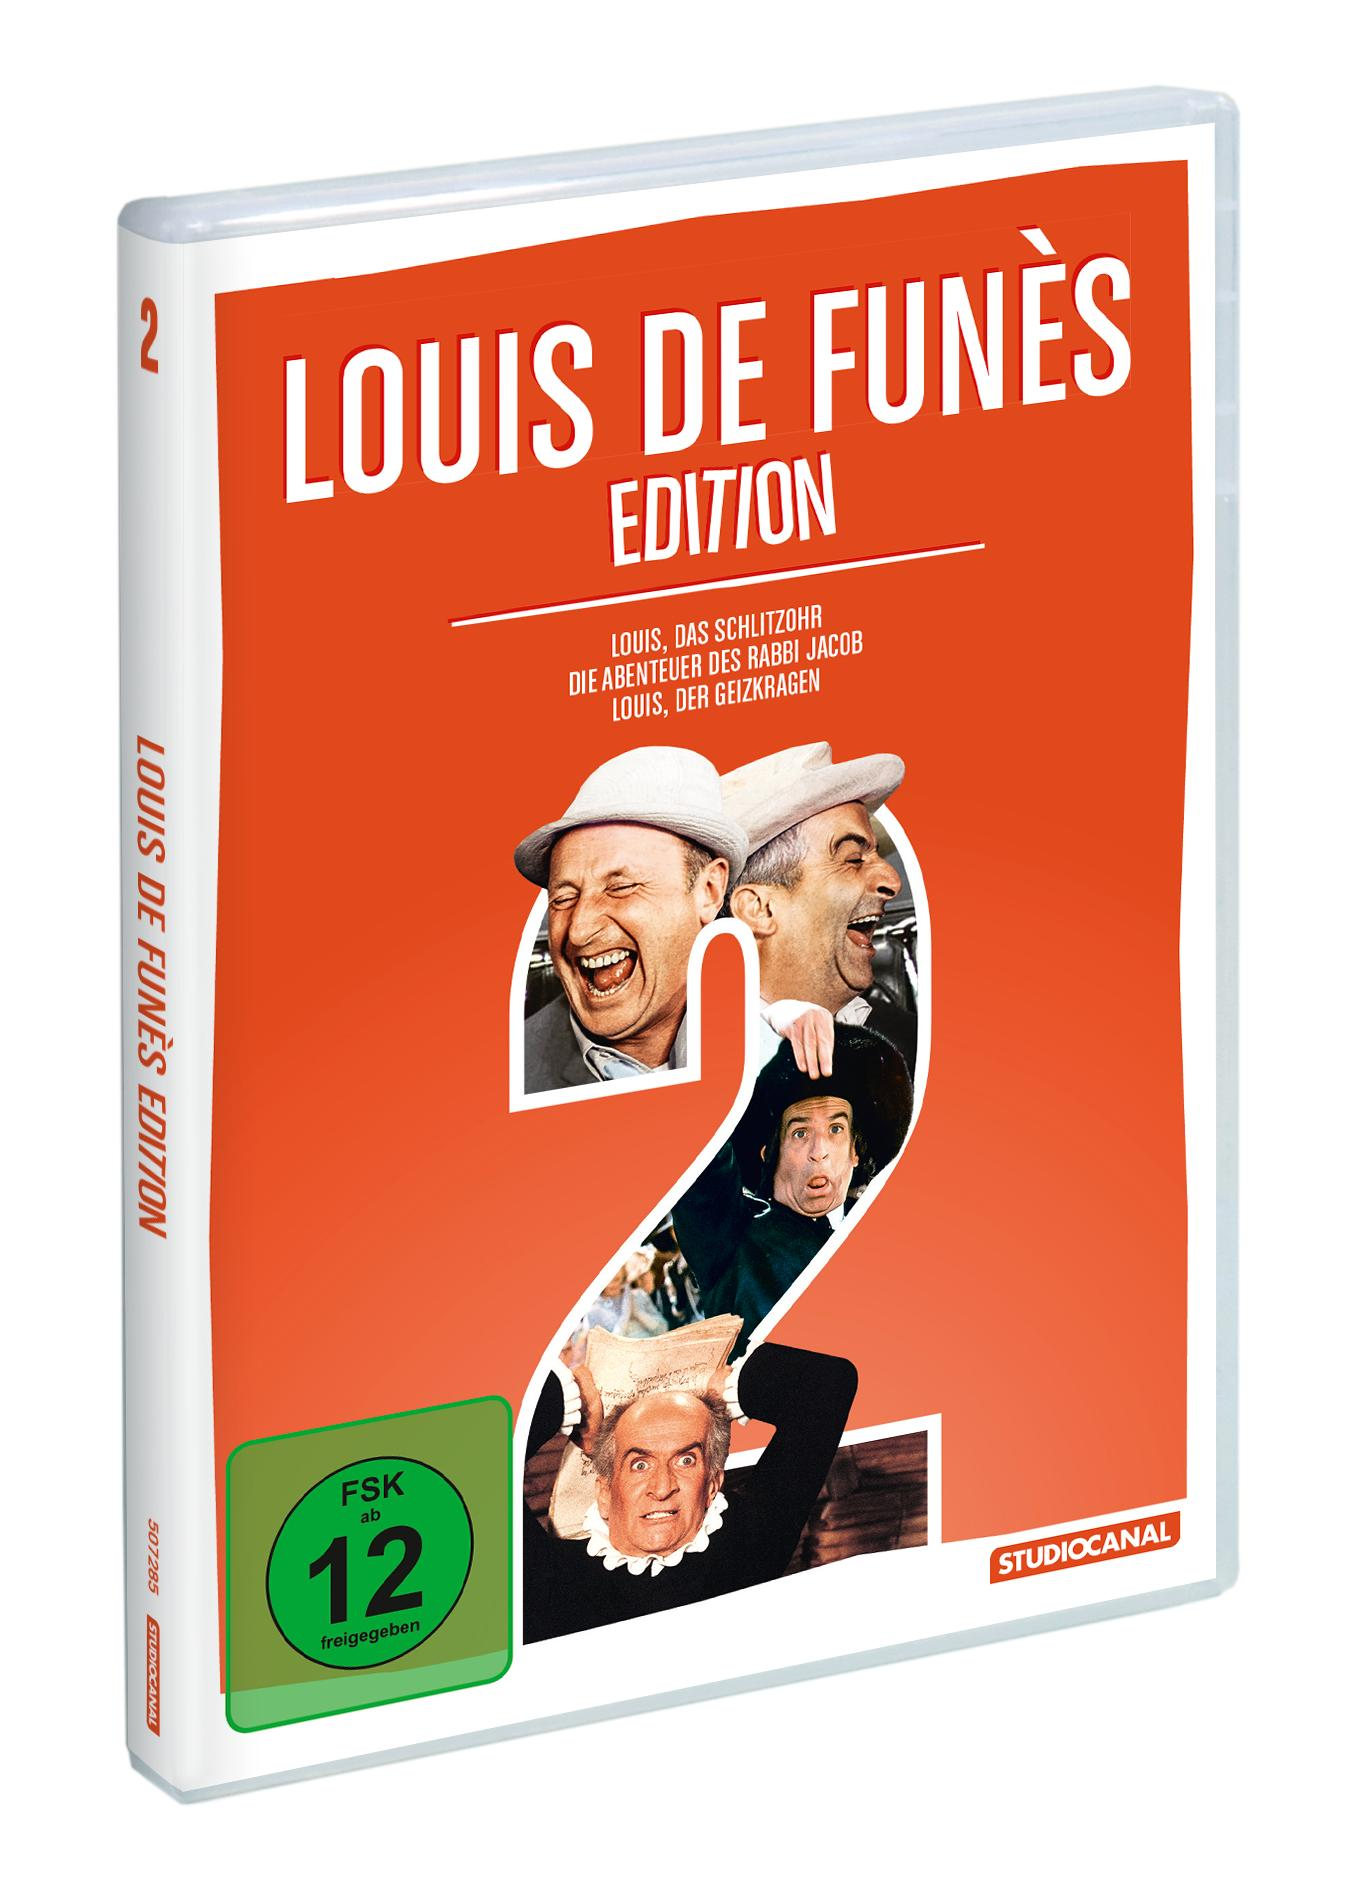 Funès de Edition 2 DVD Louis